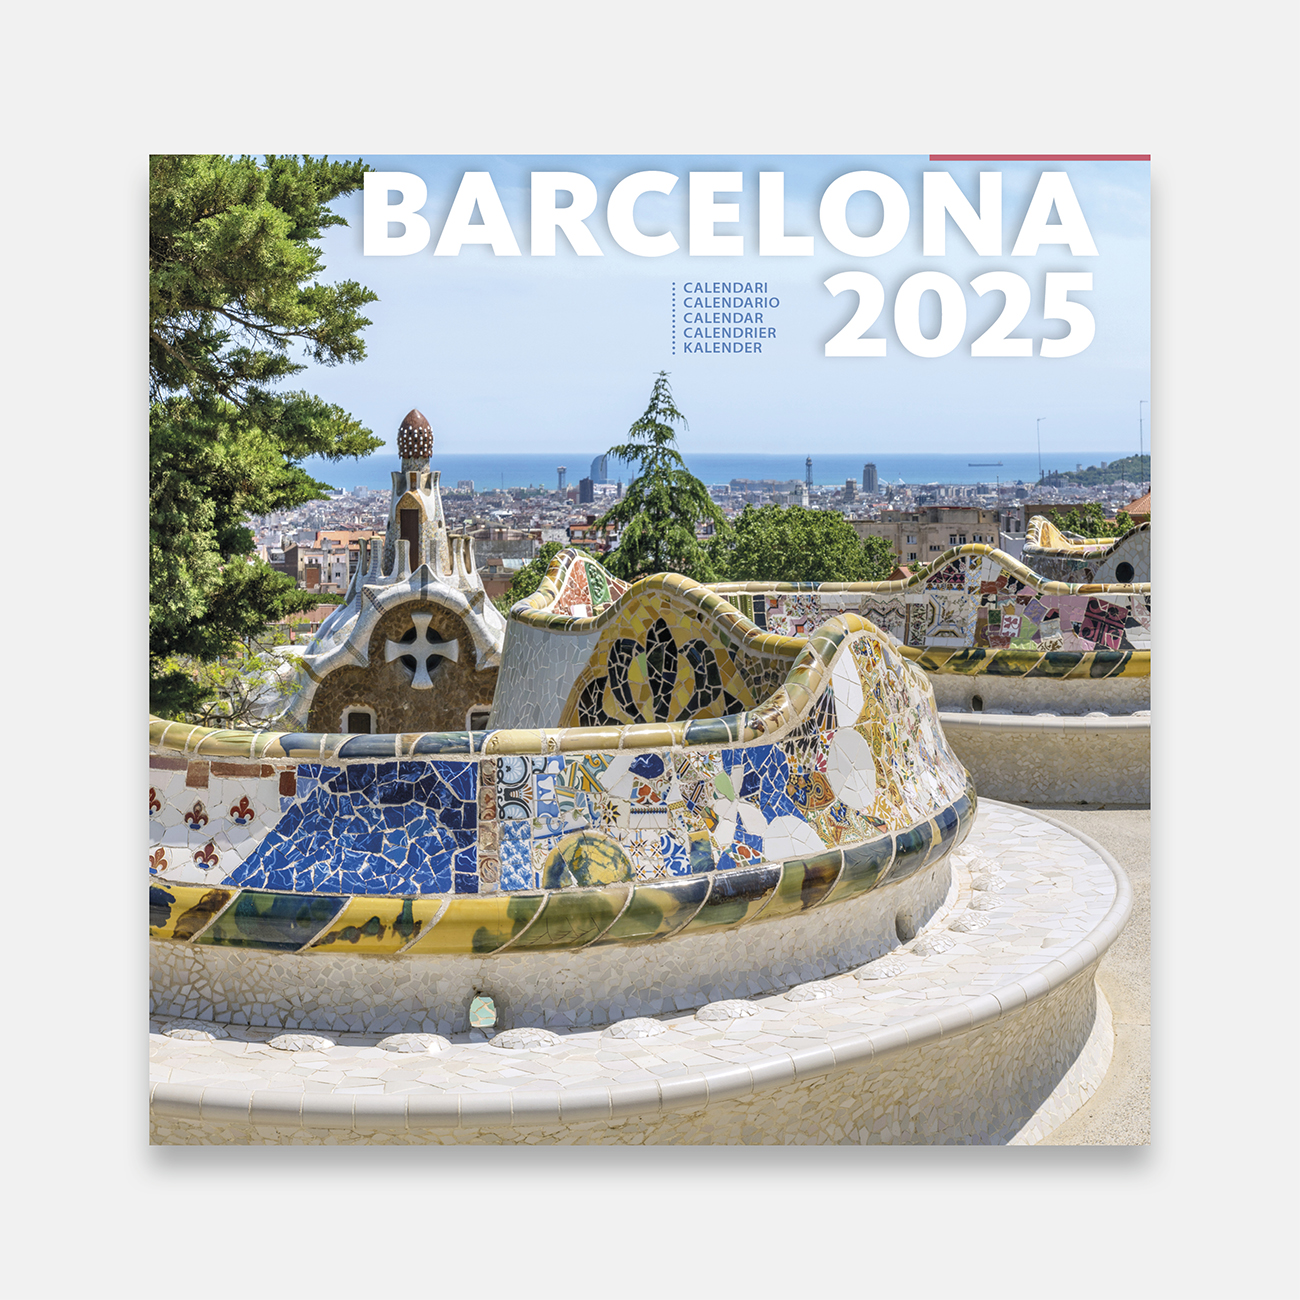 Calendar 2025 Barcelona 25b2 calendario pared 2025 barcelona